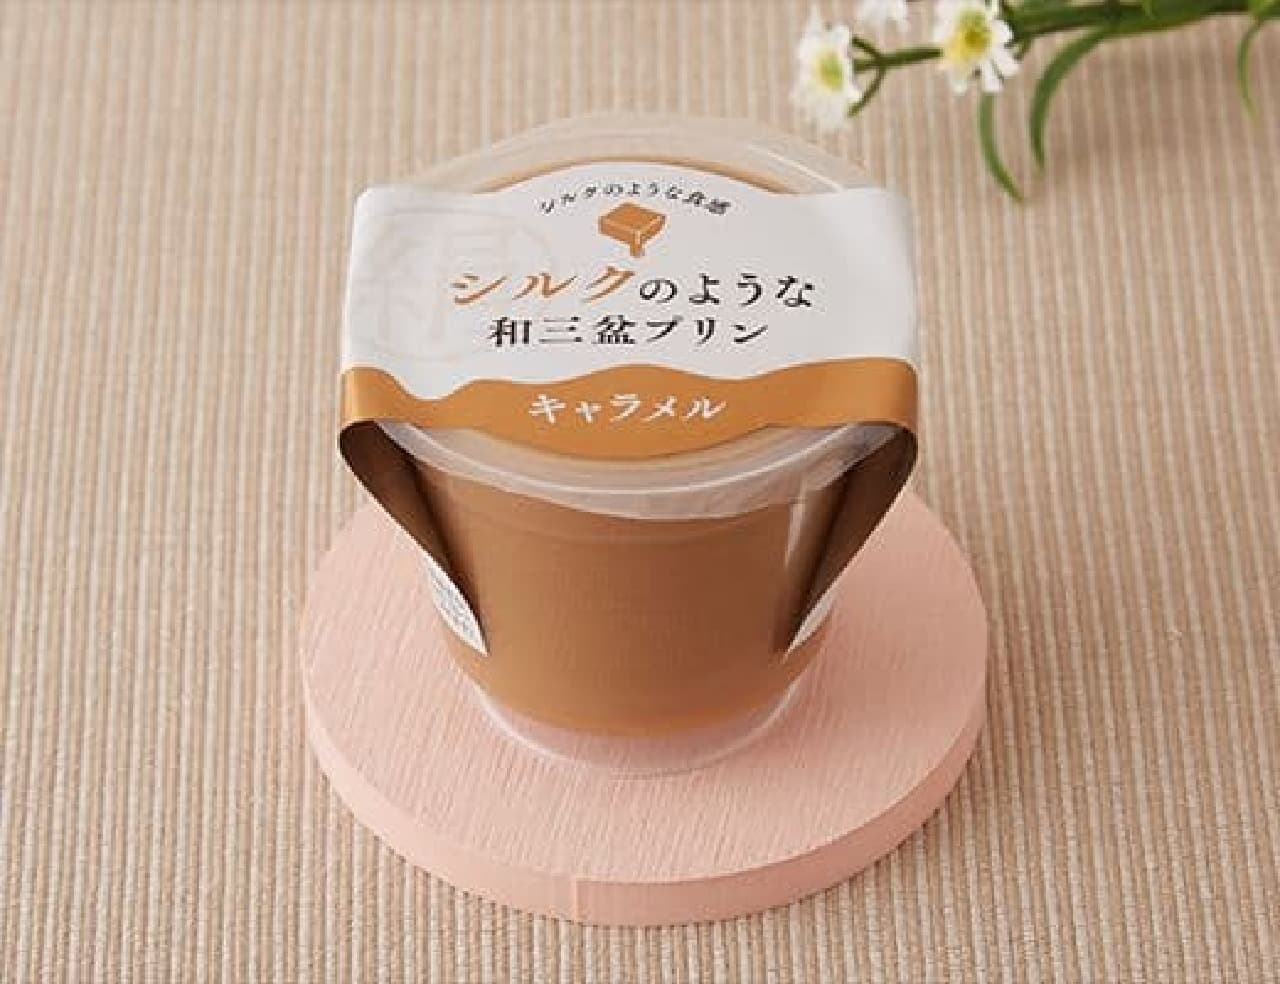 Tokushima Sangyo Silk-like Wasanbon Pudding Caramel 120g